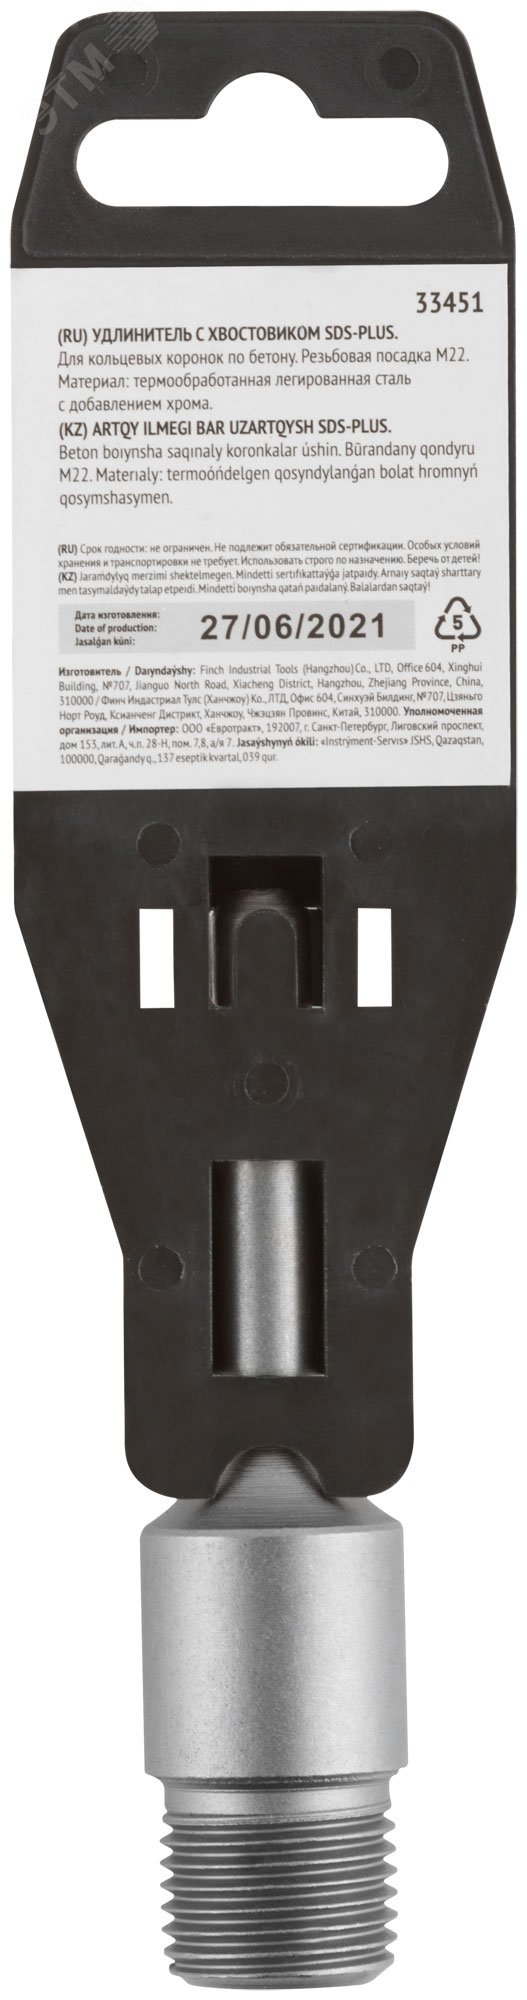 Удлинитель с хвостовиком SDS-PLUS для коронок по бетону, резьба М22, длина 100 мм 33451 FIT - превью 4